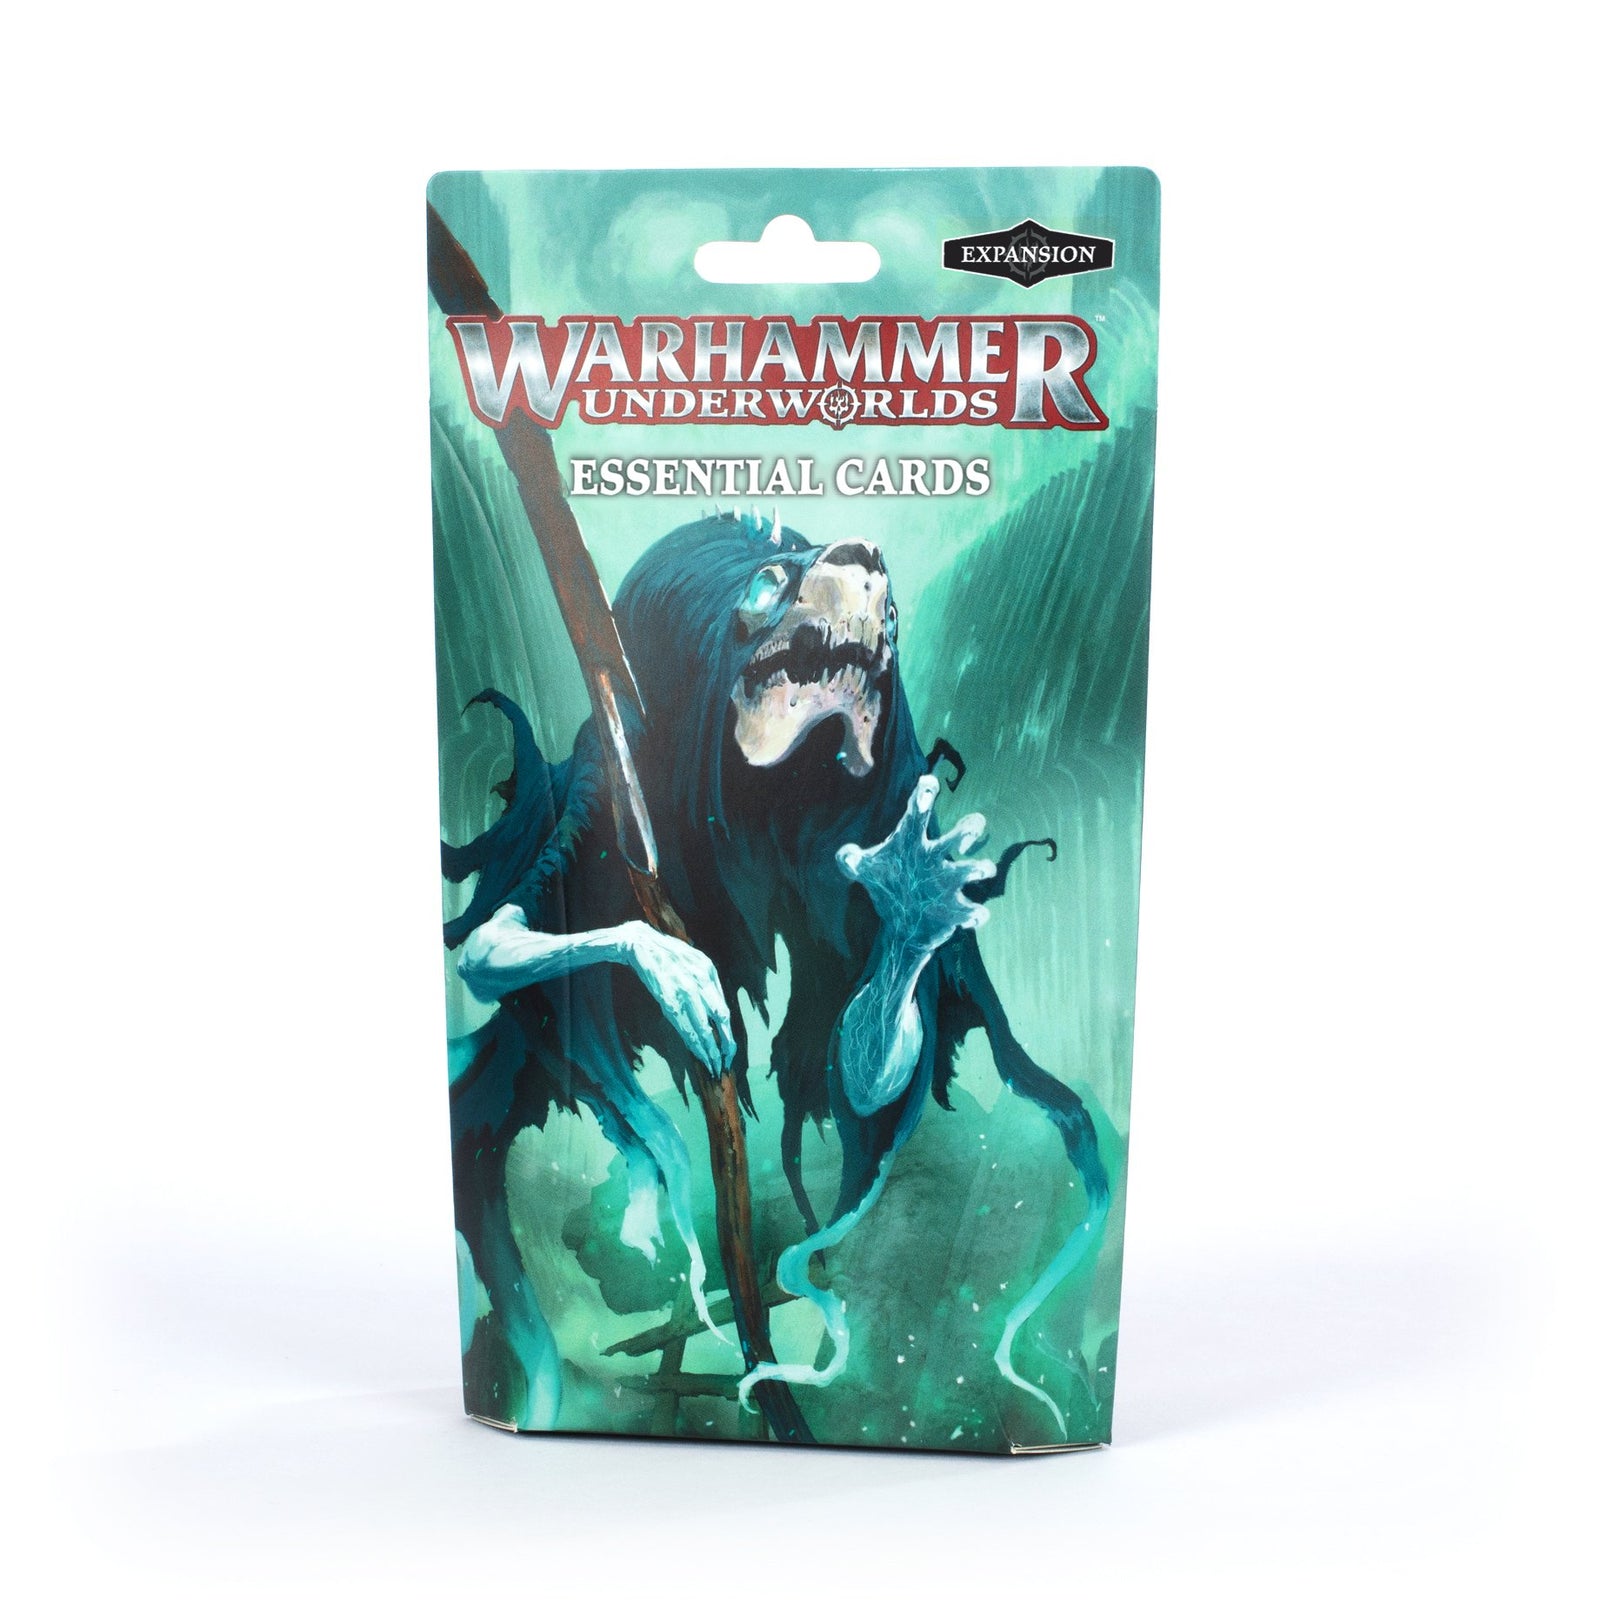 Warhammer Underworlds: Essential Cards (French printing)